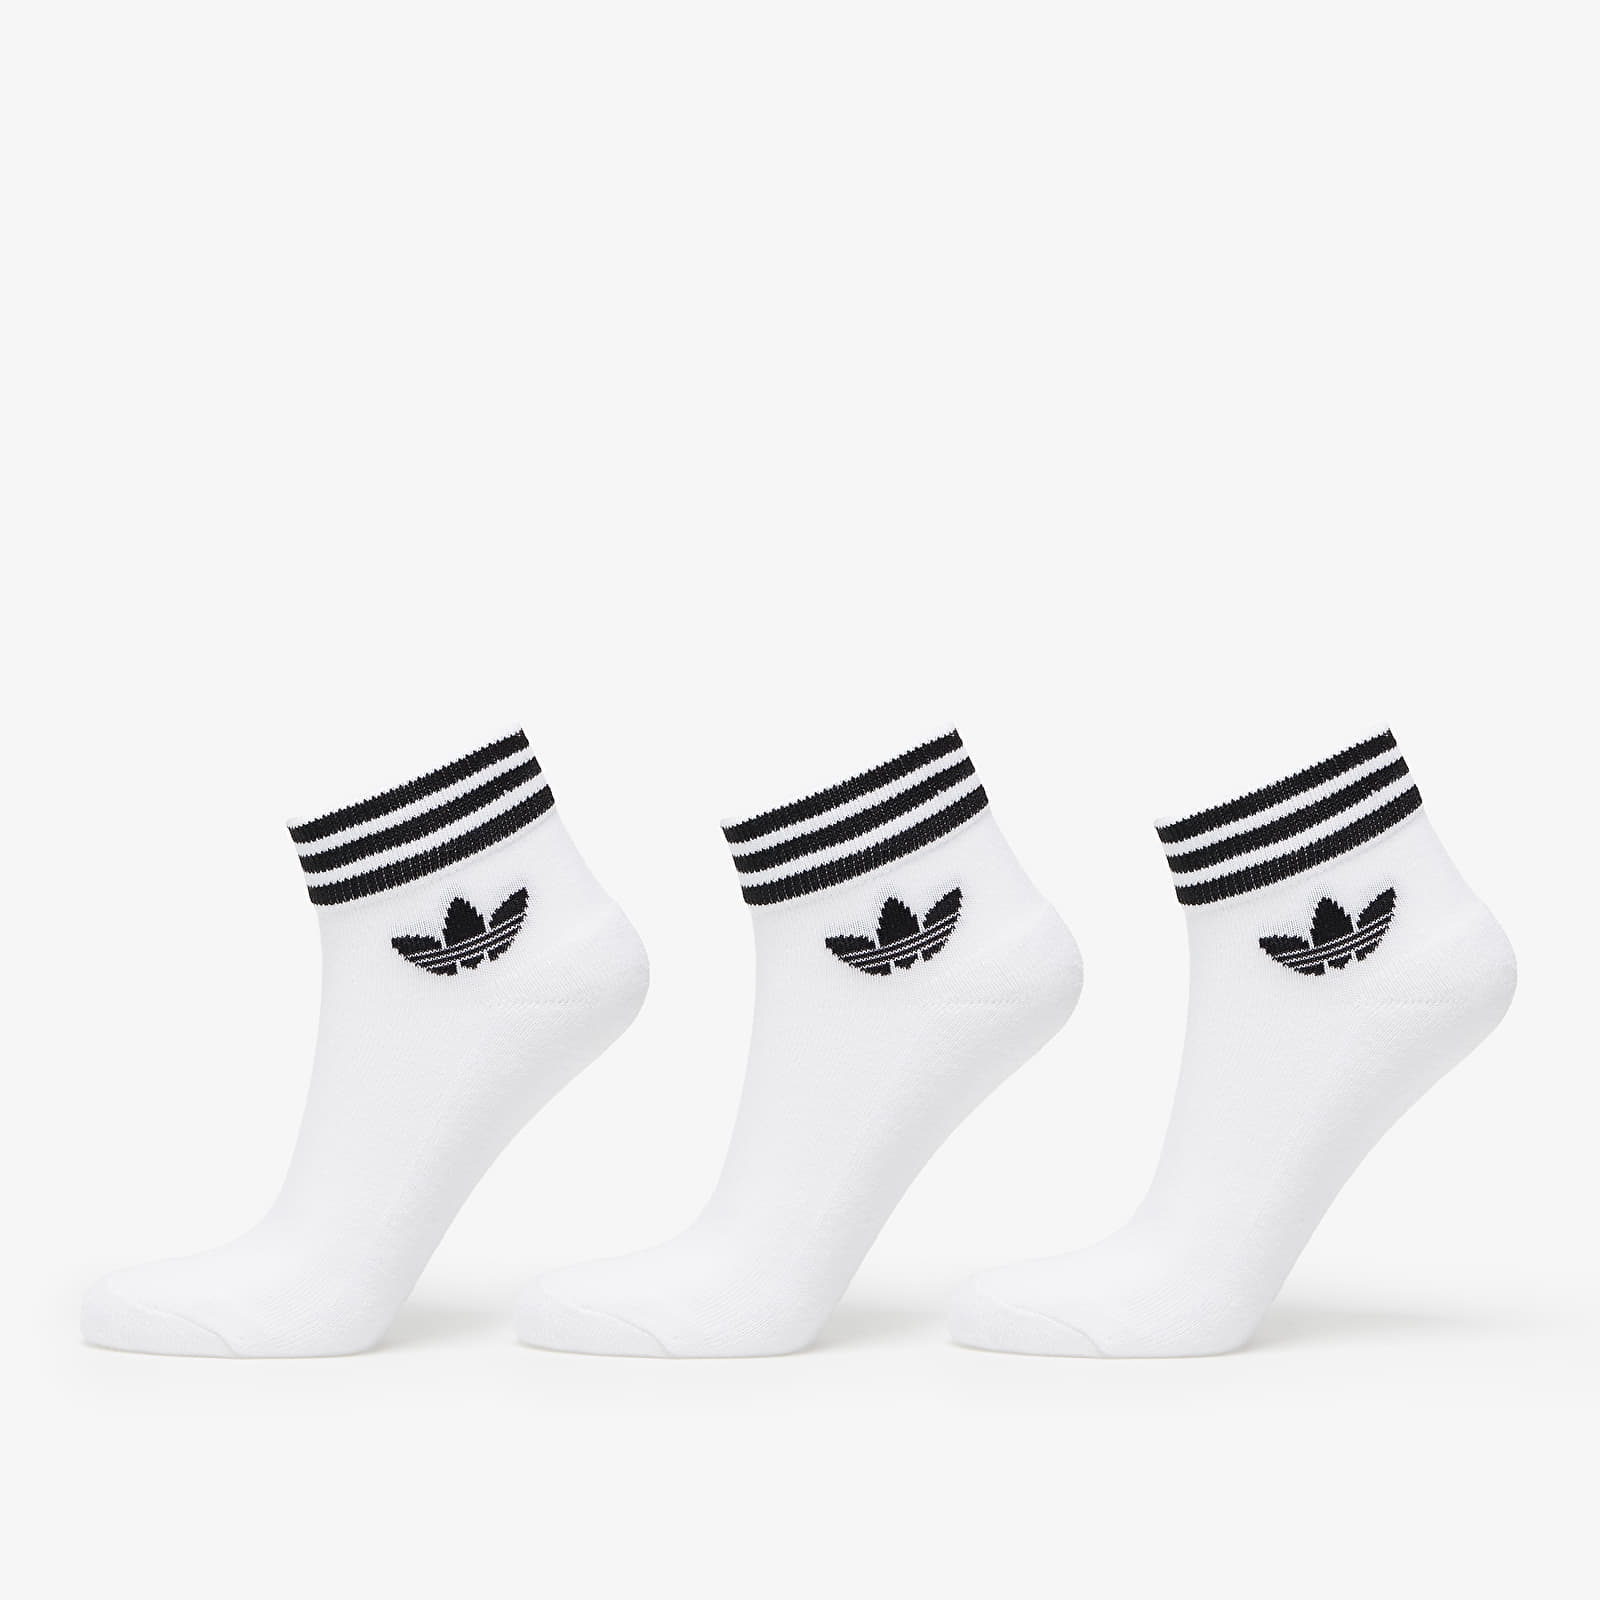 Socks adidas Trefoil Ankle Socks 3-Pack White/ Black